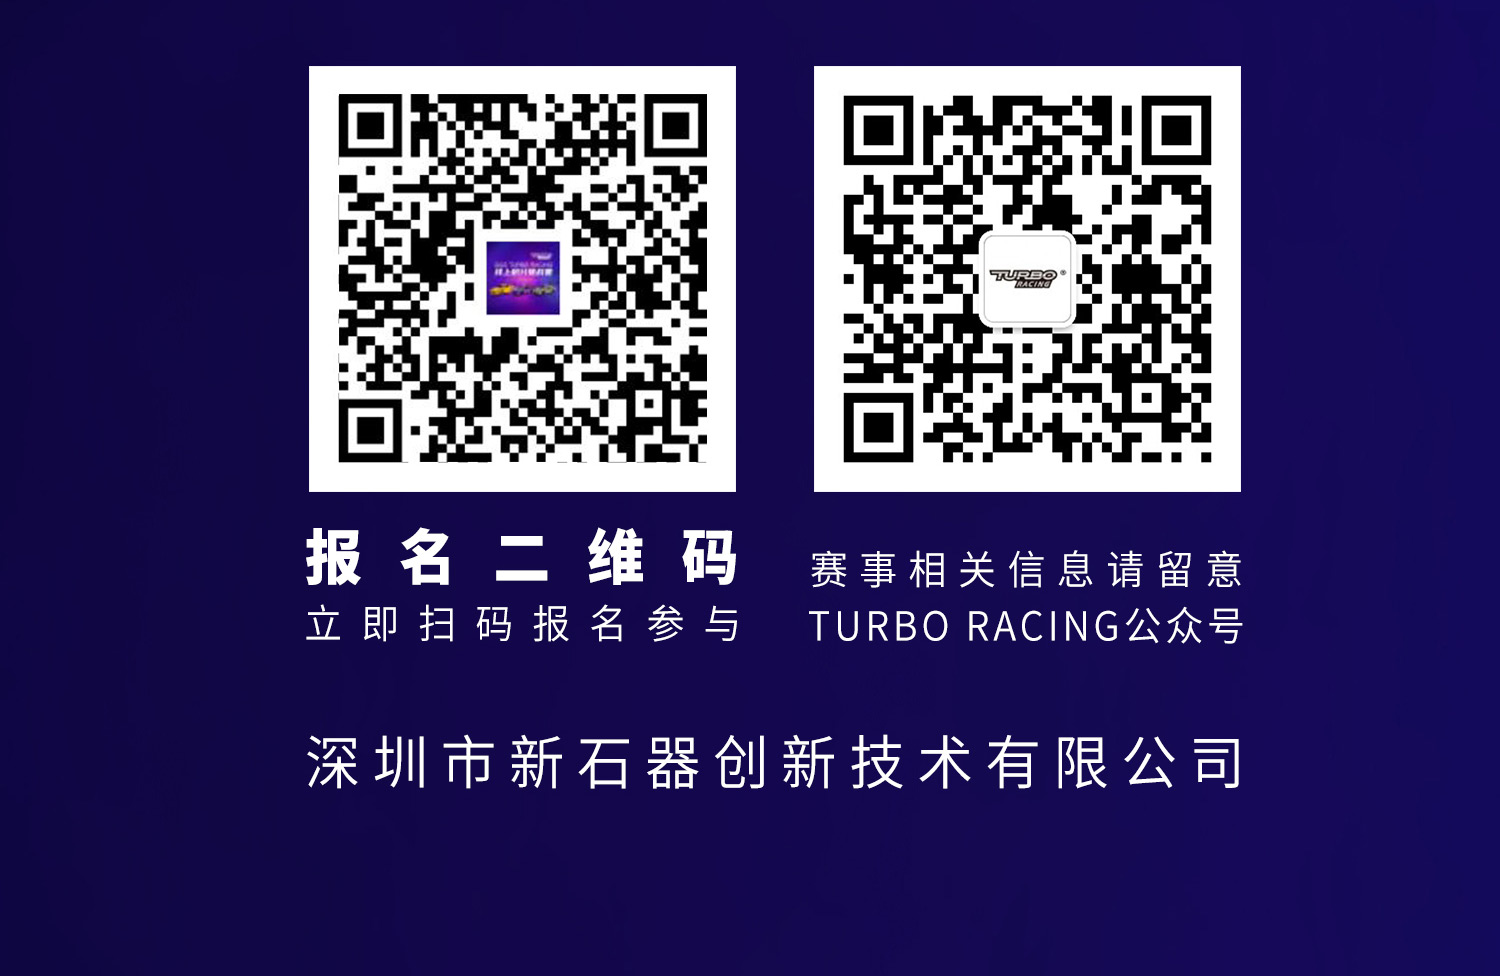 2022 TURBO RACING 线上积分挑战赛